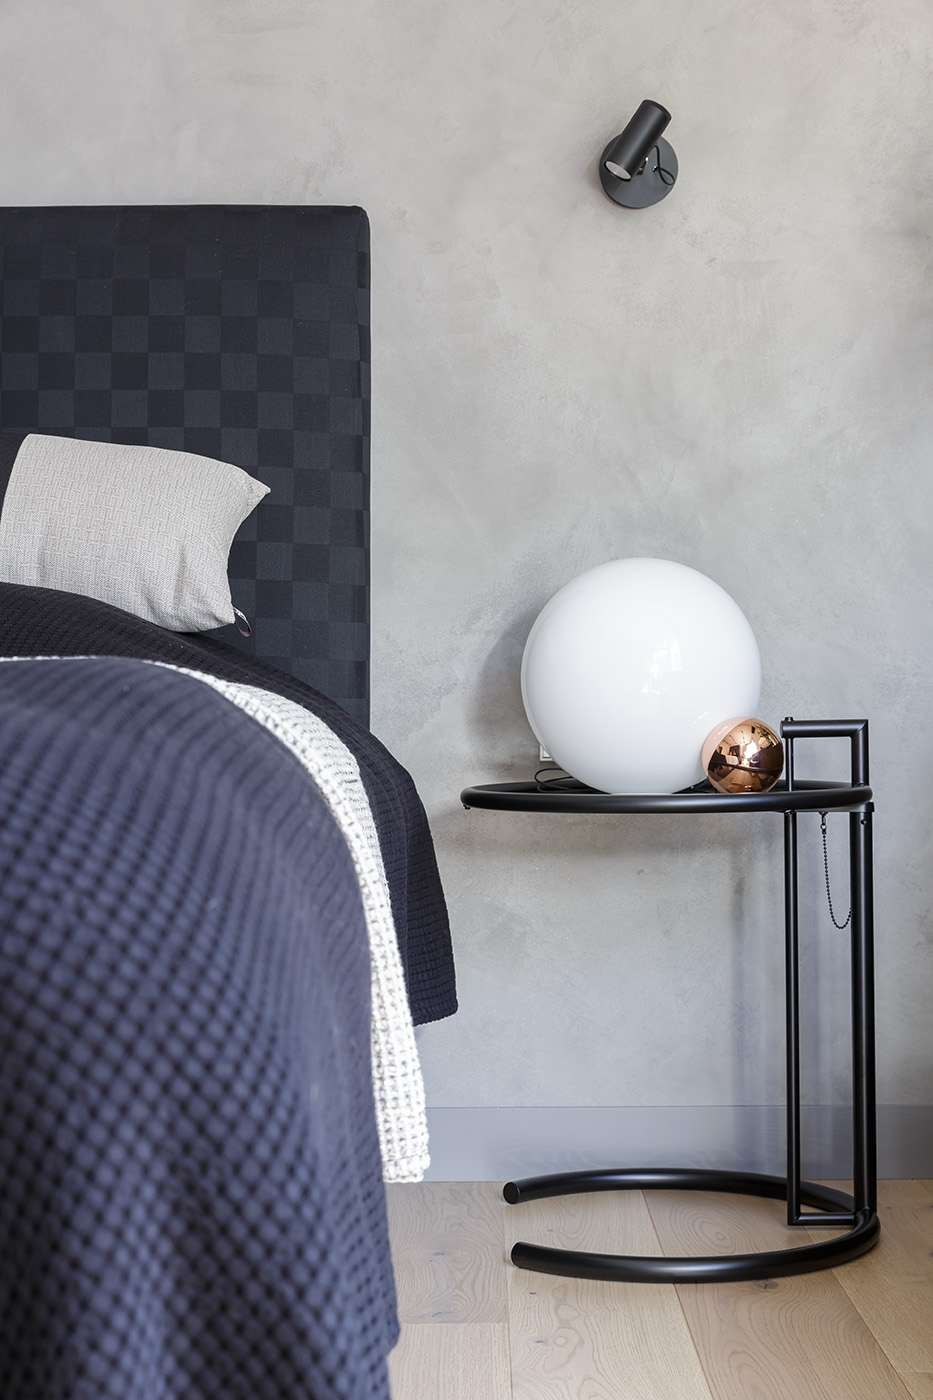 Một thiết kế bằng chất liệu kim loại sơn tĩnh điện màu đen, dáng mảnh mai và nhẹ nhàng, khác hẳn với kiểu táp đầu giường truyền thống có phần thô cứng. Thiết kế này vừa thẩm mỹ vừa dễ dàng linh hoạt đến nhiều vị trí trong phòng.